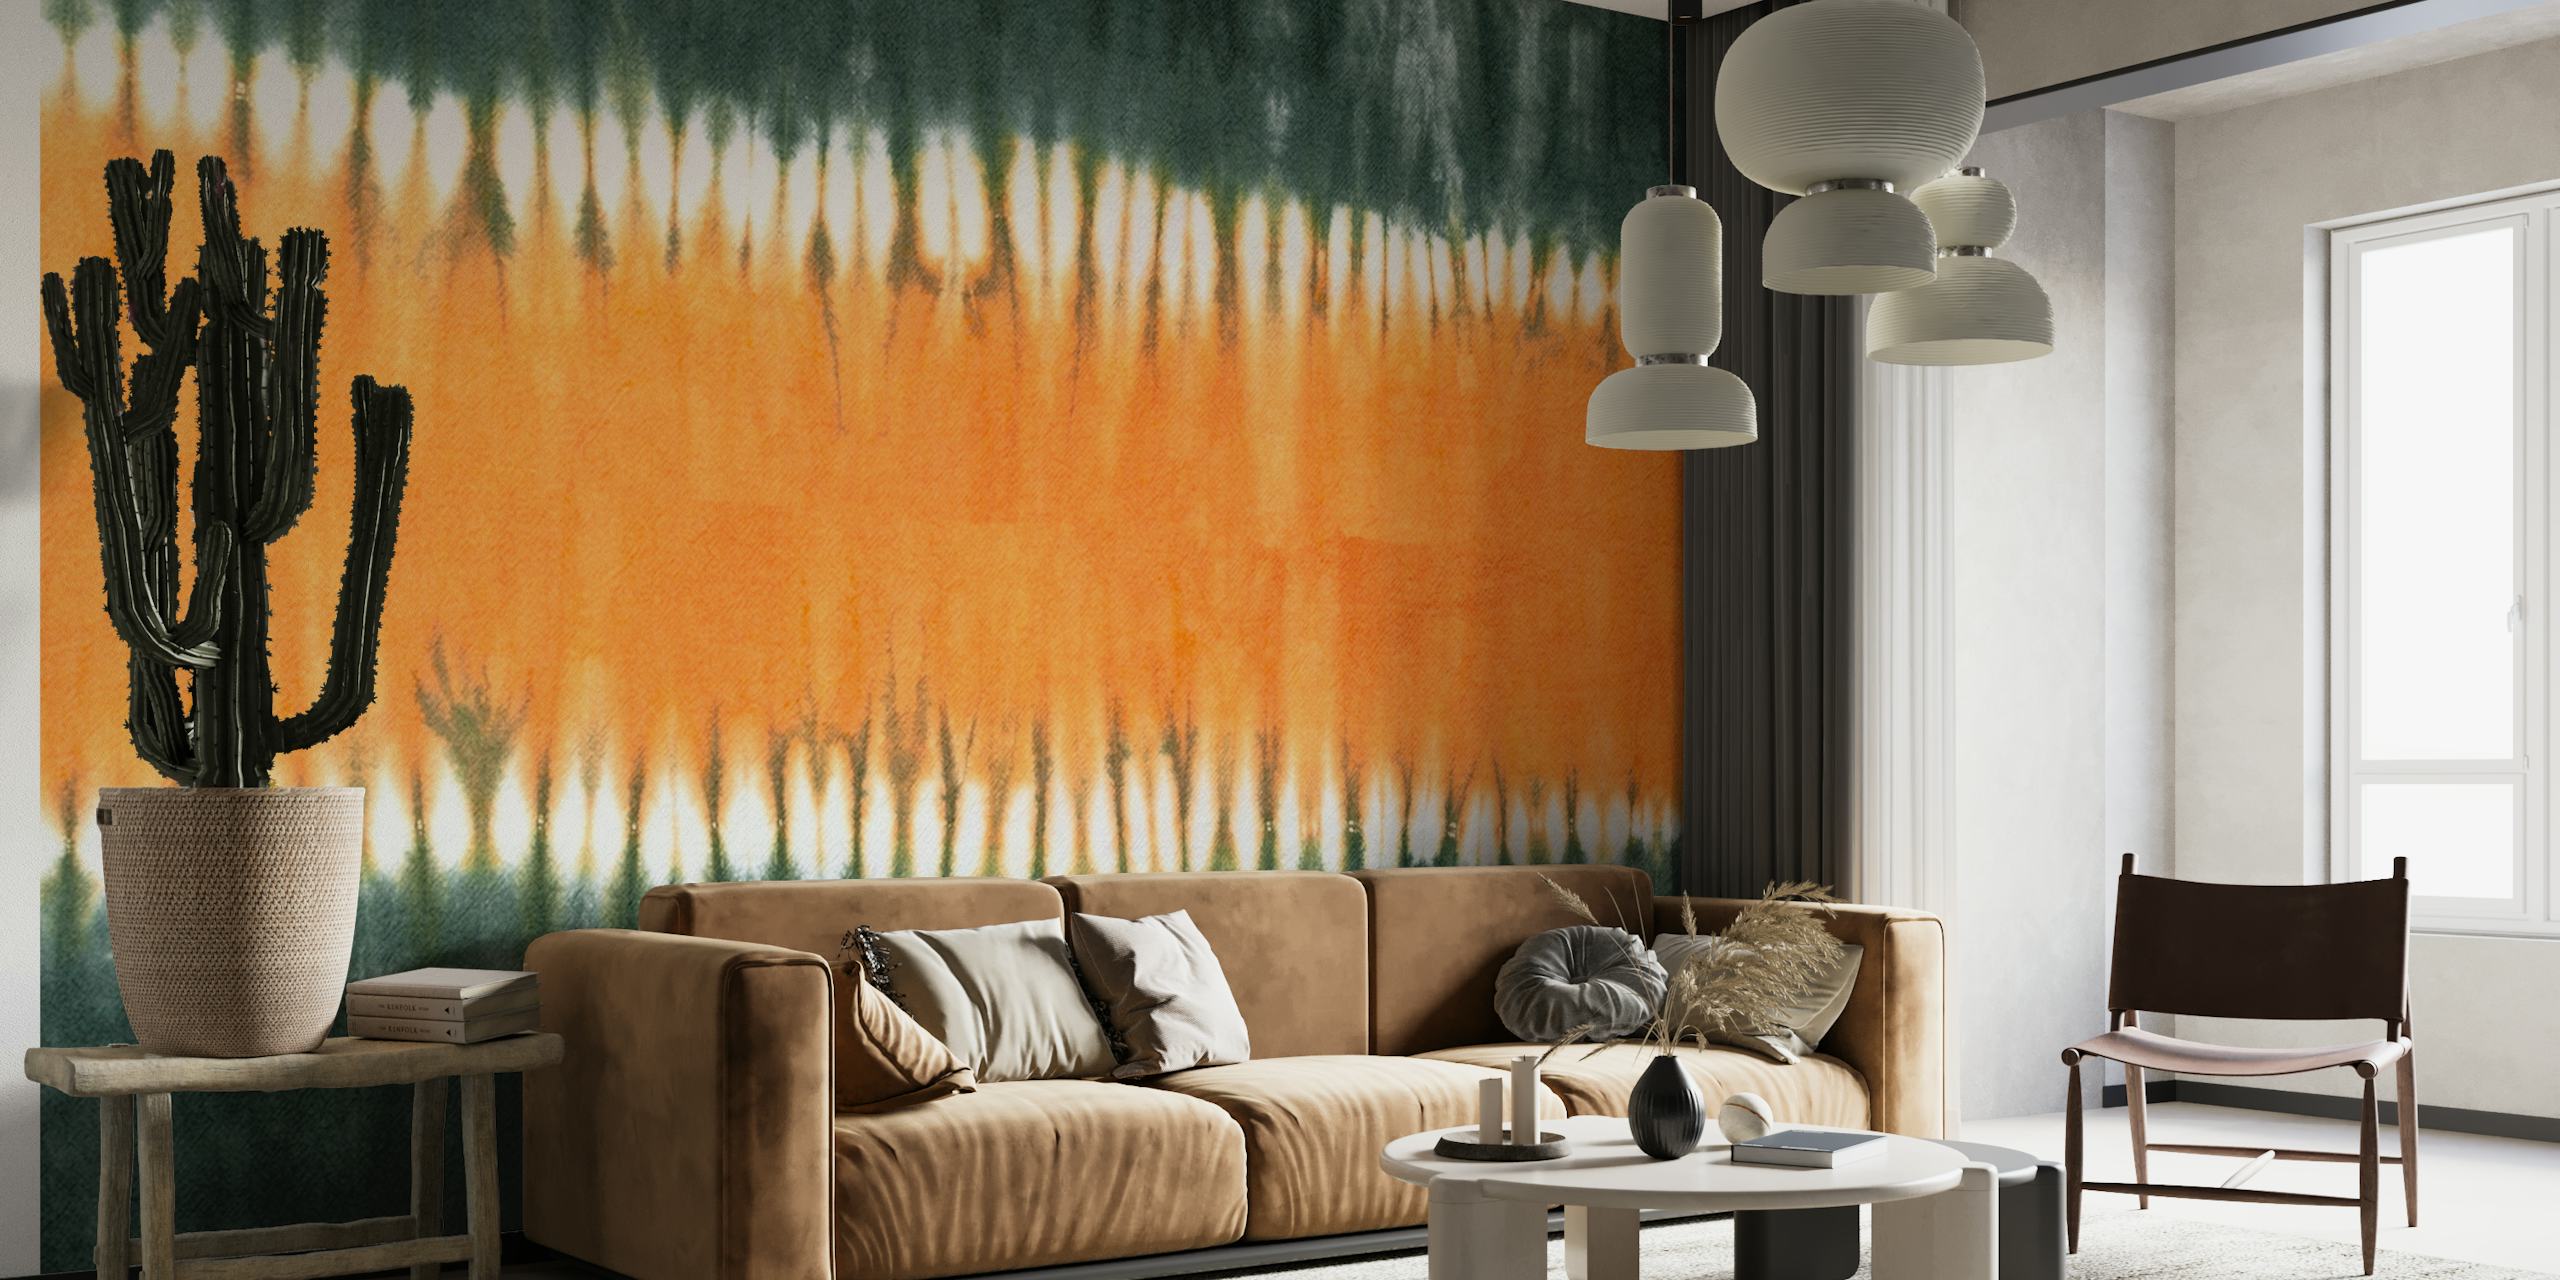 Fotomural vinílico de parede tie-dye verde e laranja com um design abstrato com um visual boêmio vibrante.